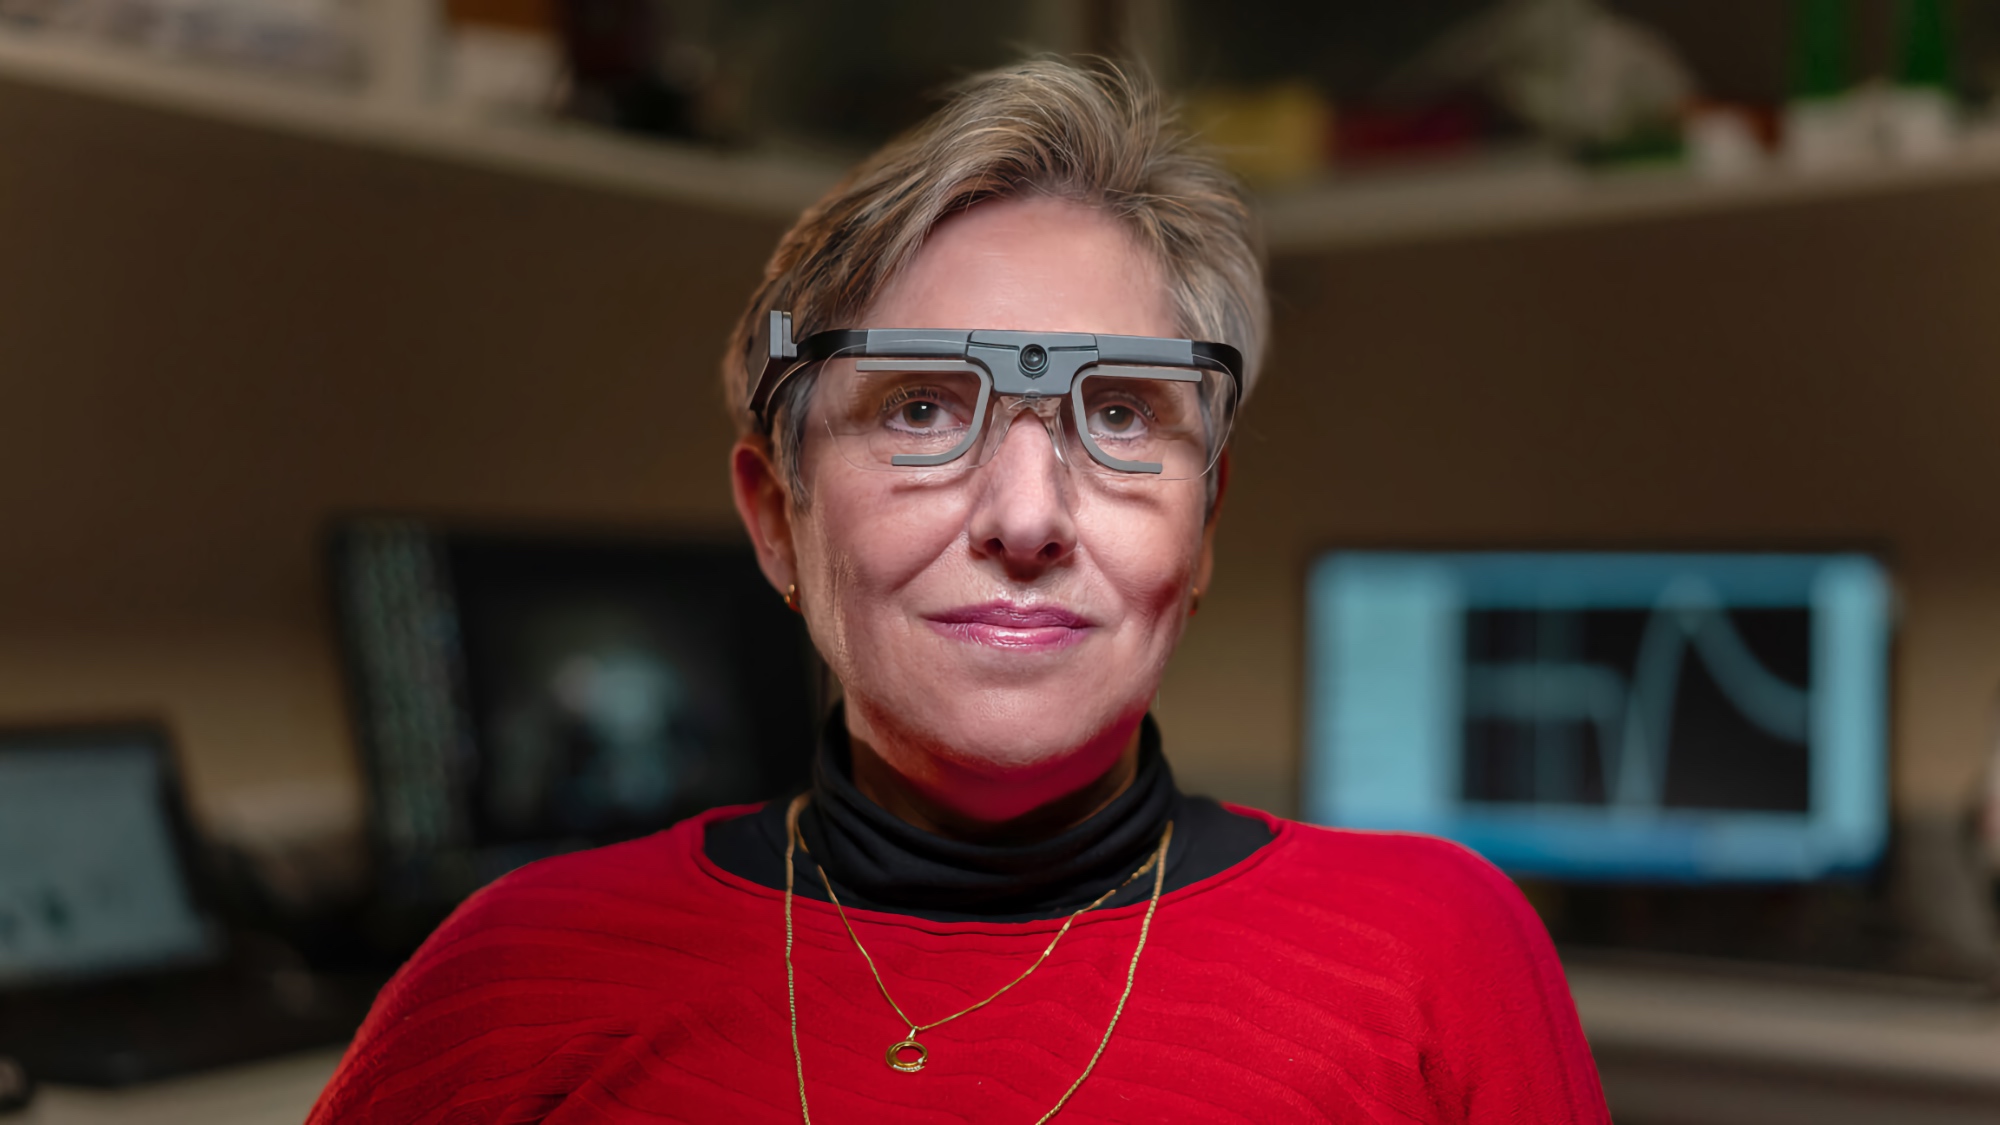 Naukowcy stworzyli sztuczny wzrok, który… pozwala widzieć niewidomym